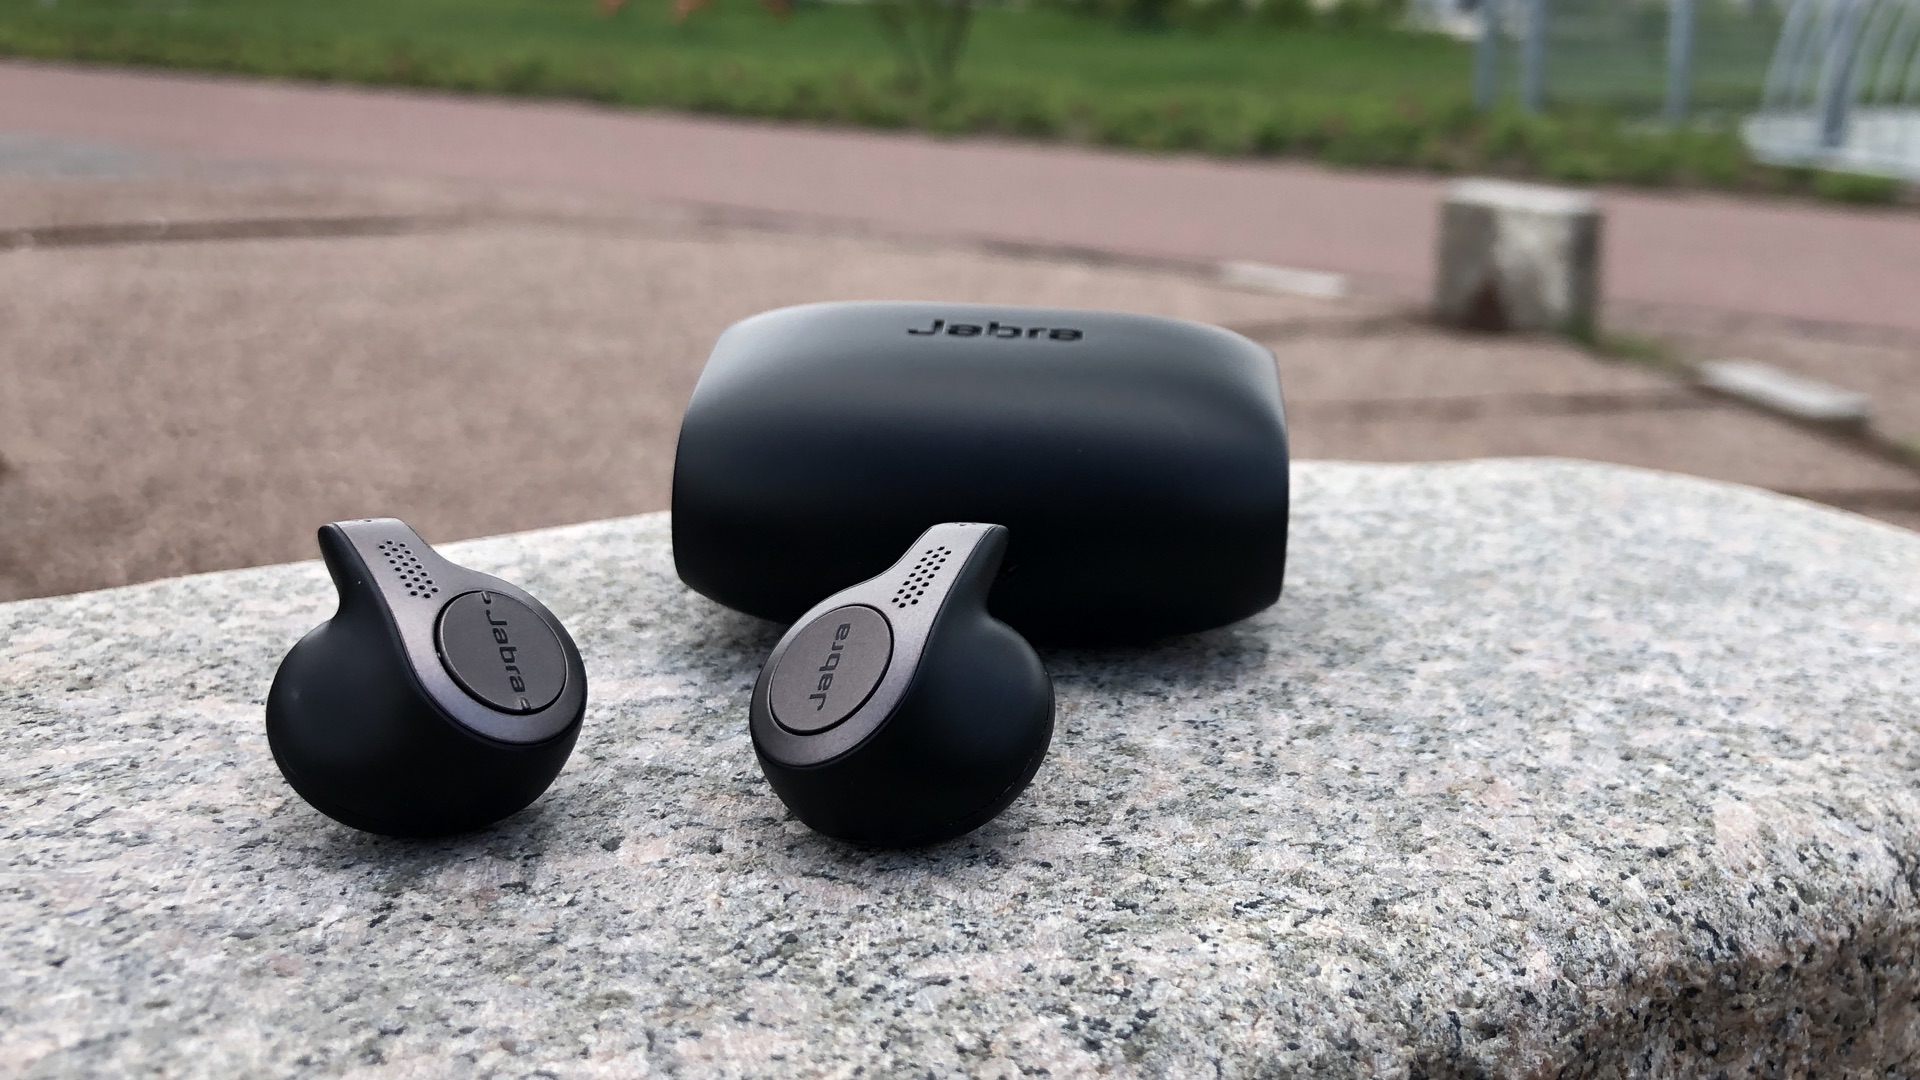 Jabra Elite 65t true wireless earphones review: A true AirPod alternative